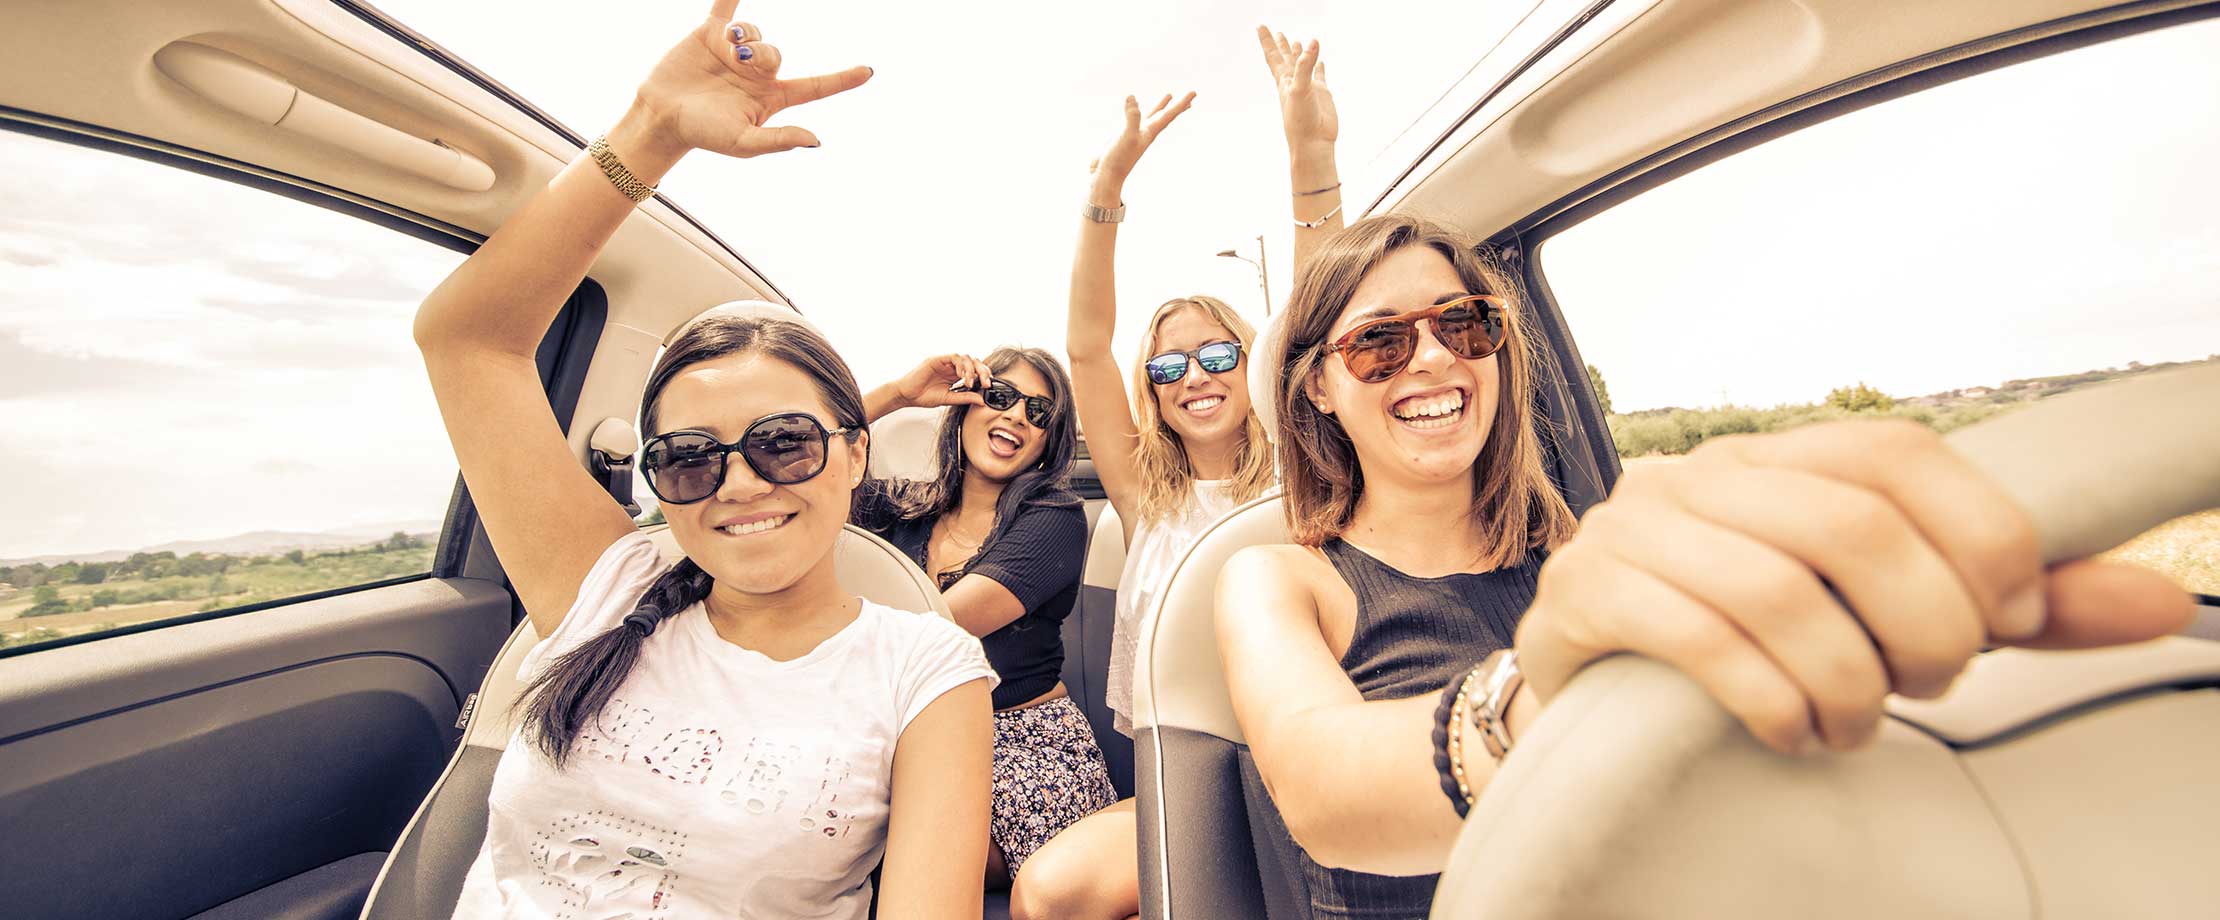 Vier Freundinnen sind zusammen auf einem Roadtrip und sitzen im Auto. Sie lachen in die Kamera und haben jubelnd die Hände in der Luft.